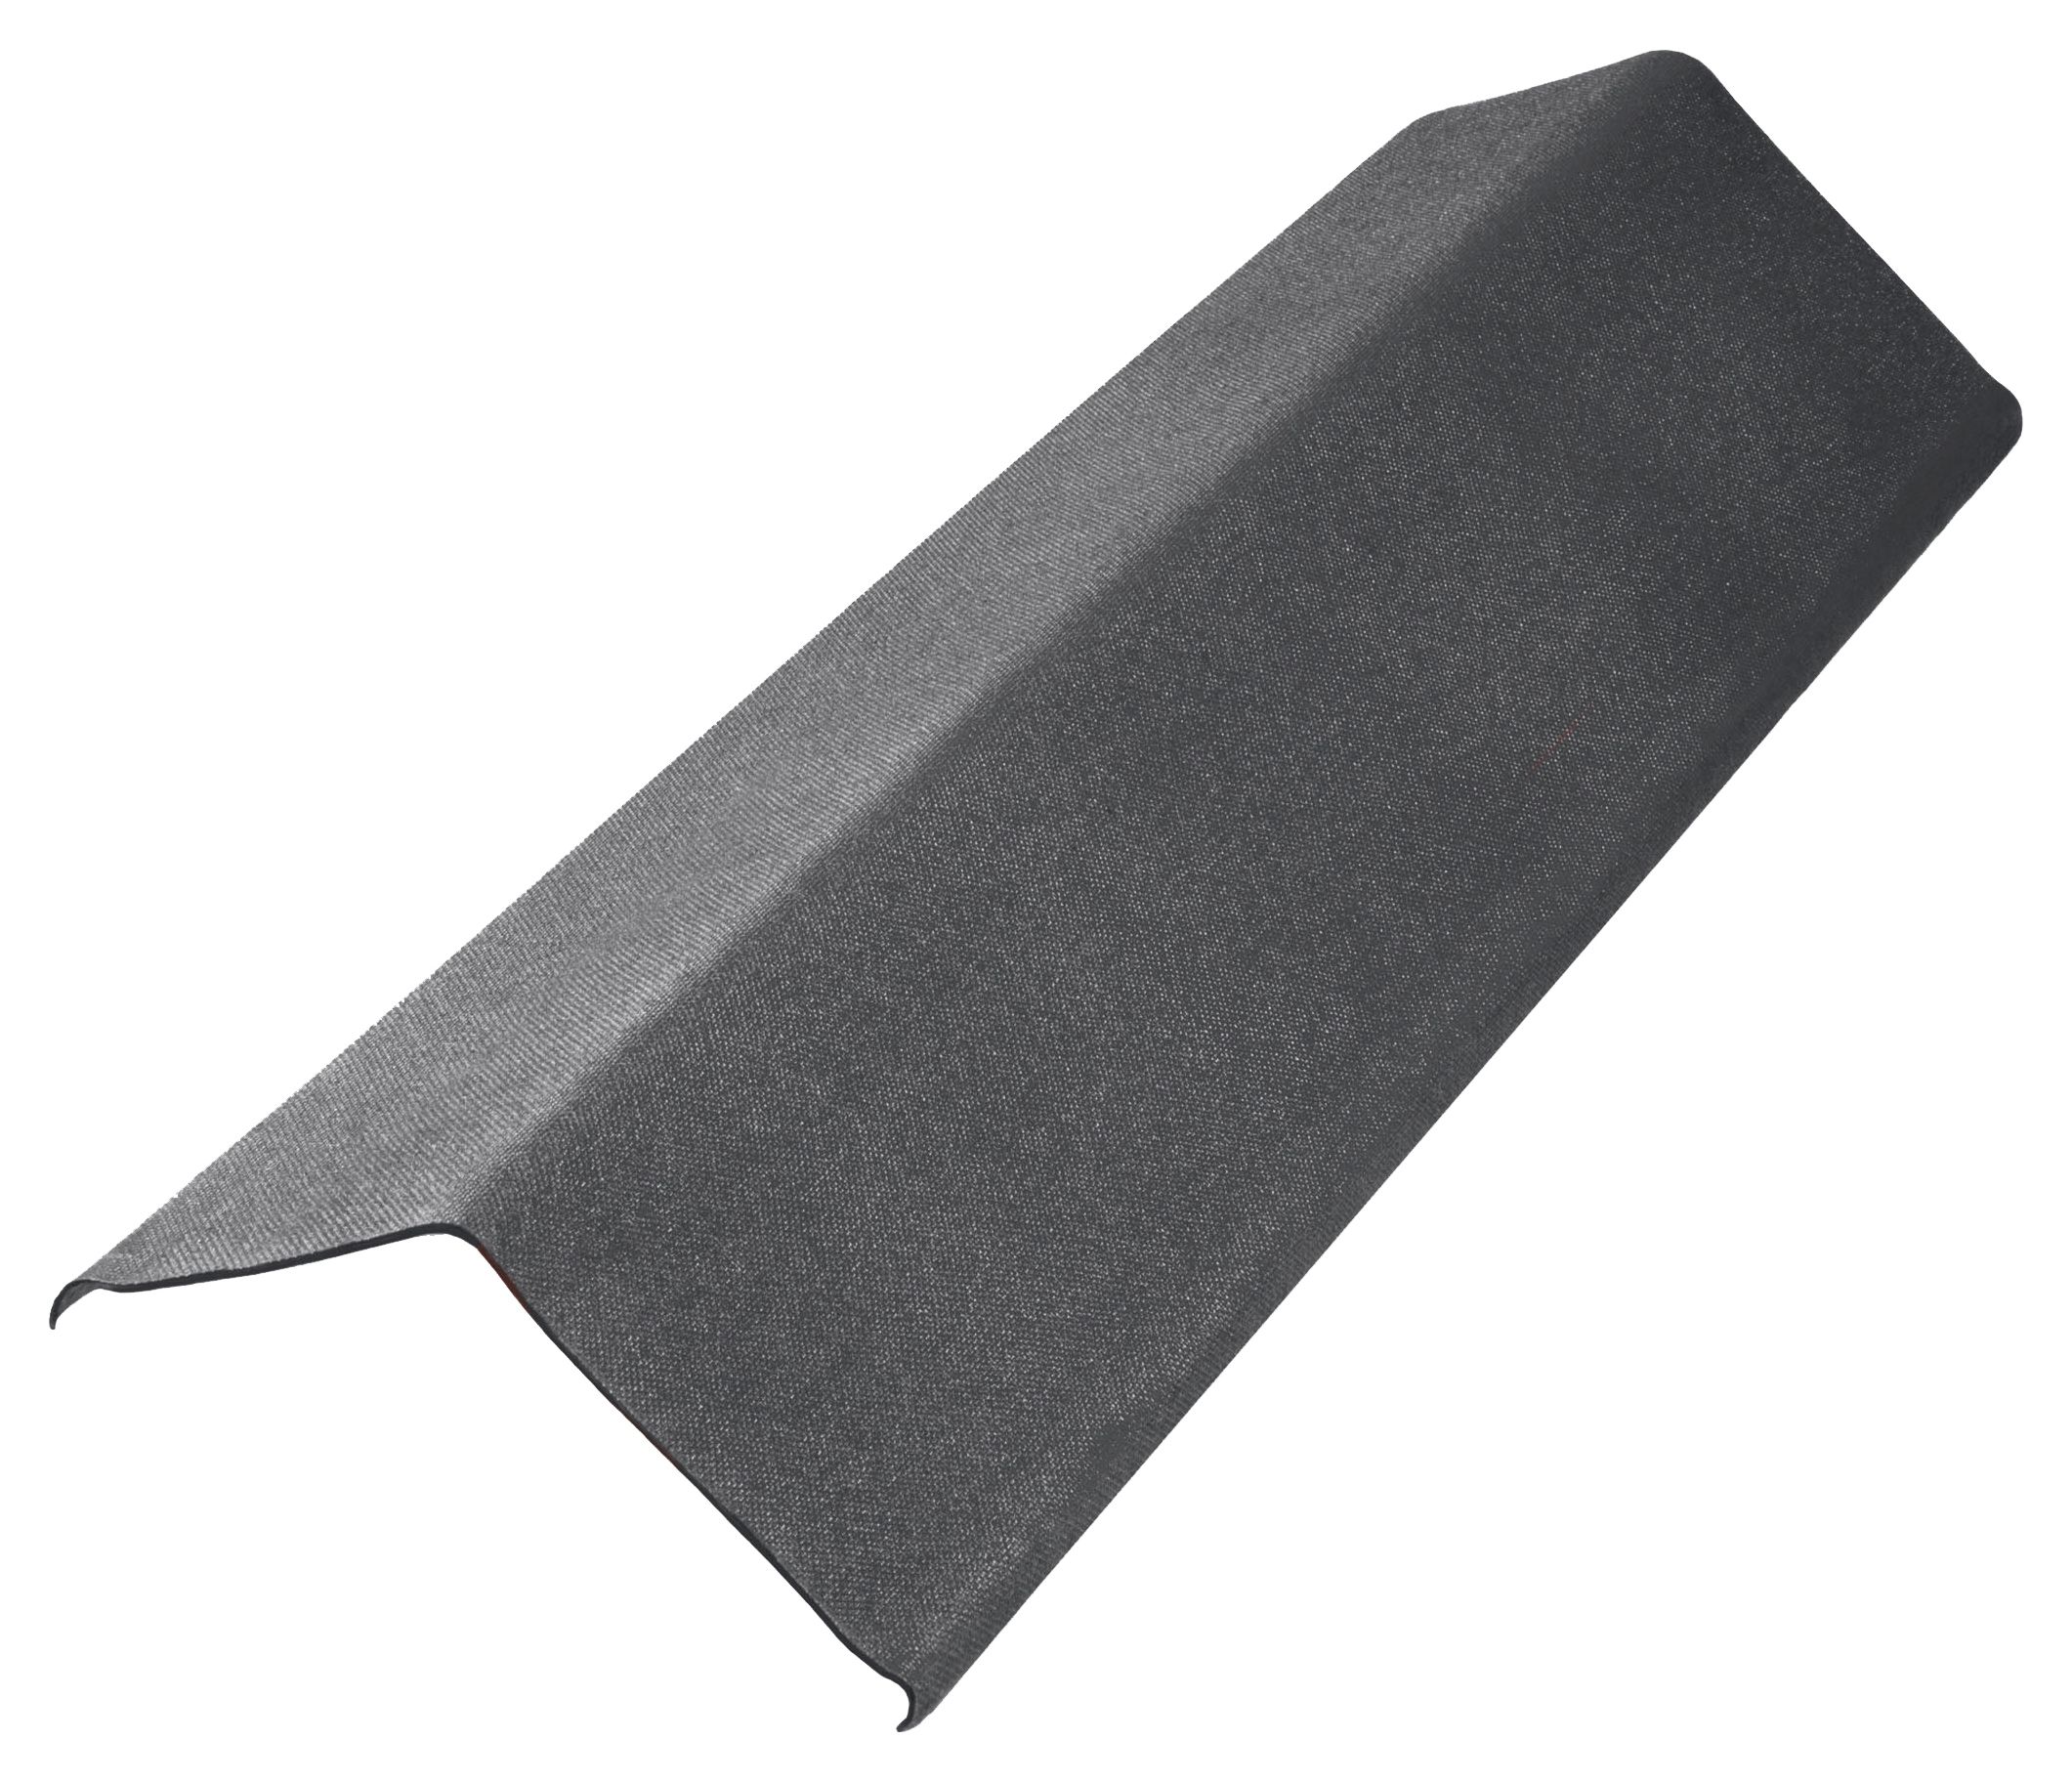 Onduline Intense Anthracite Grey Bitumen Verge - 1000 x 150 x 3mm